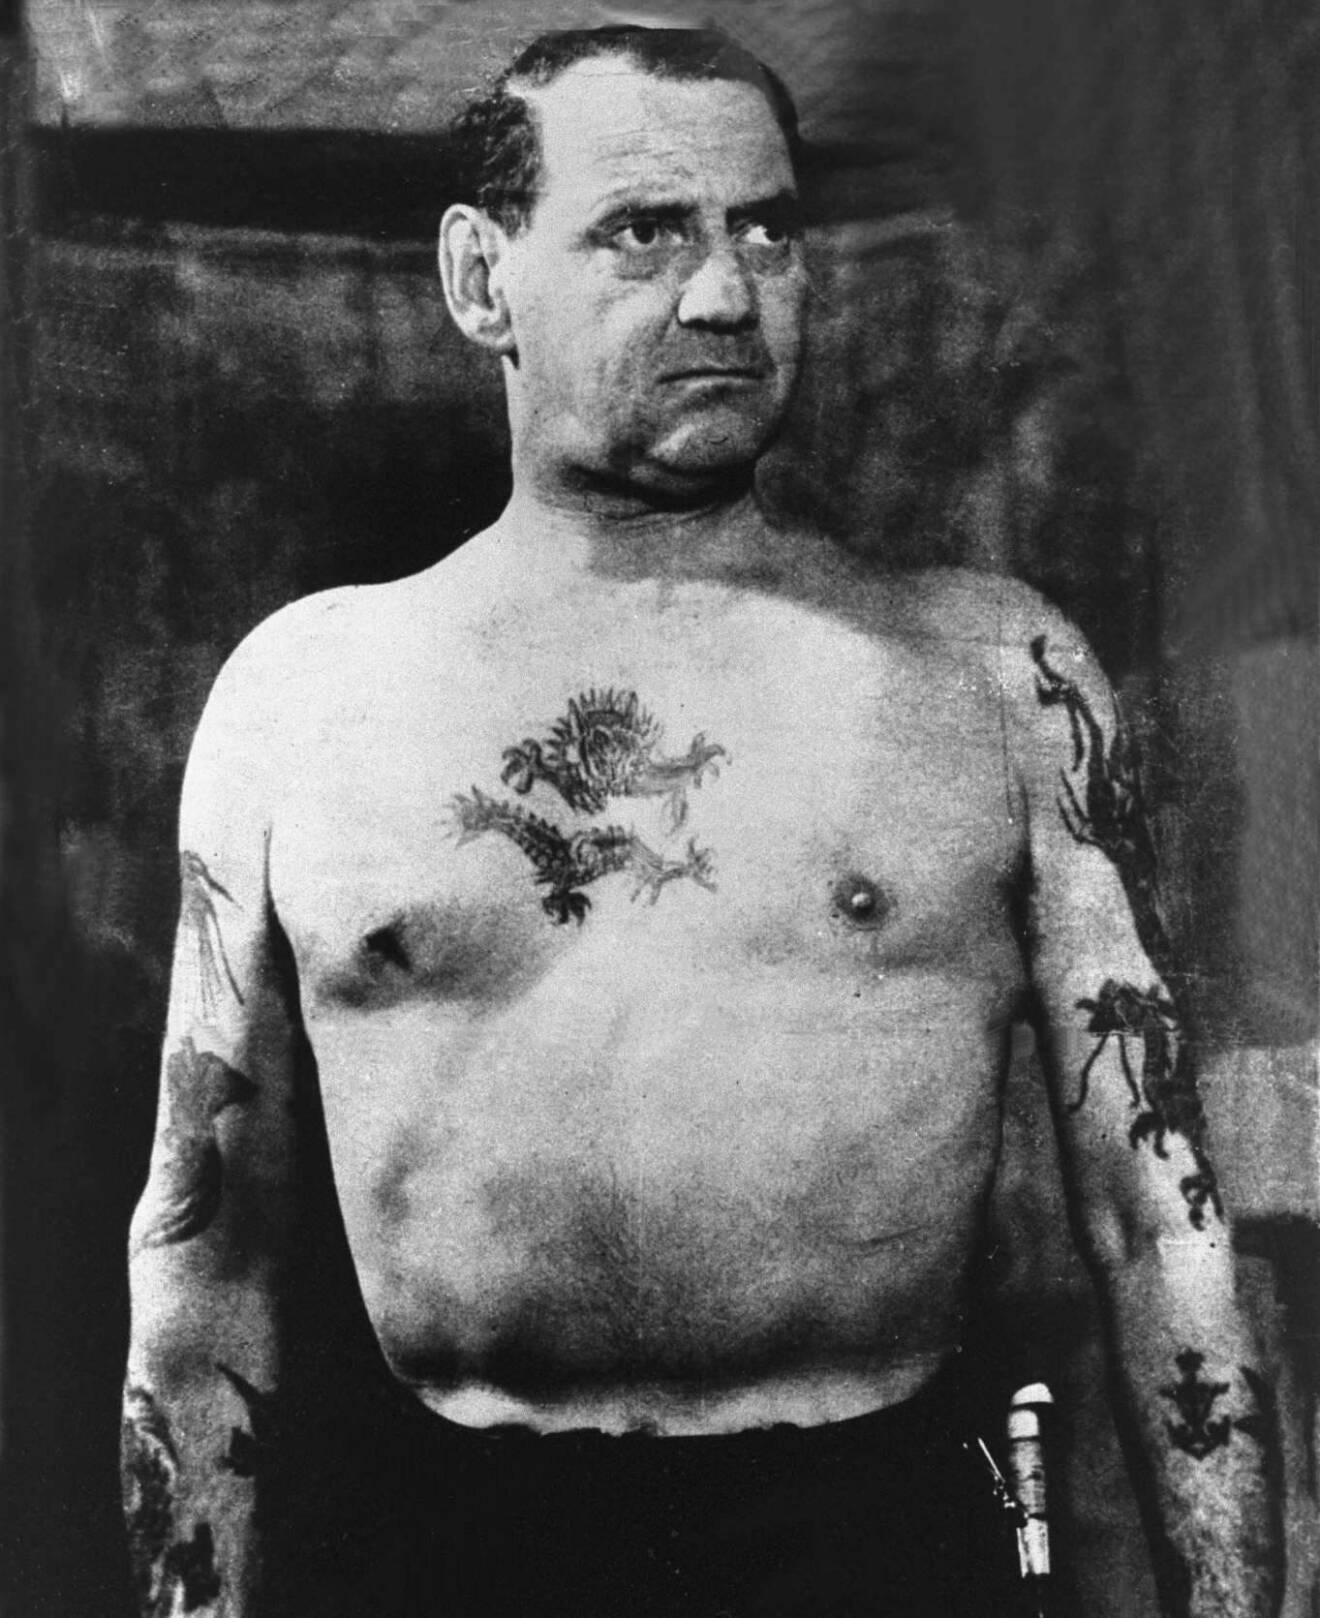 Kung Frederik med bar överkropp och tatueringar